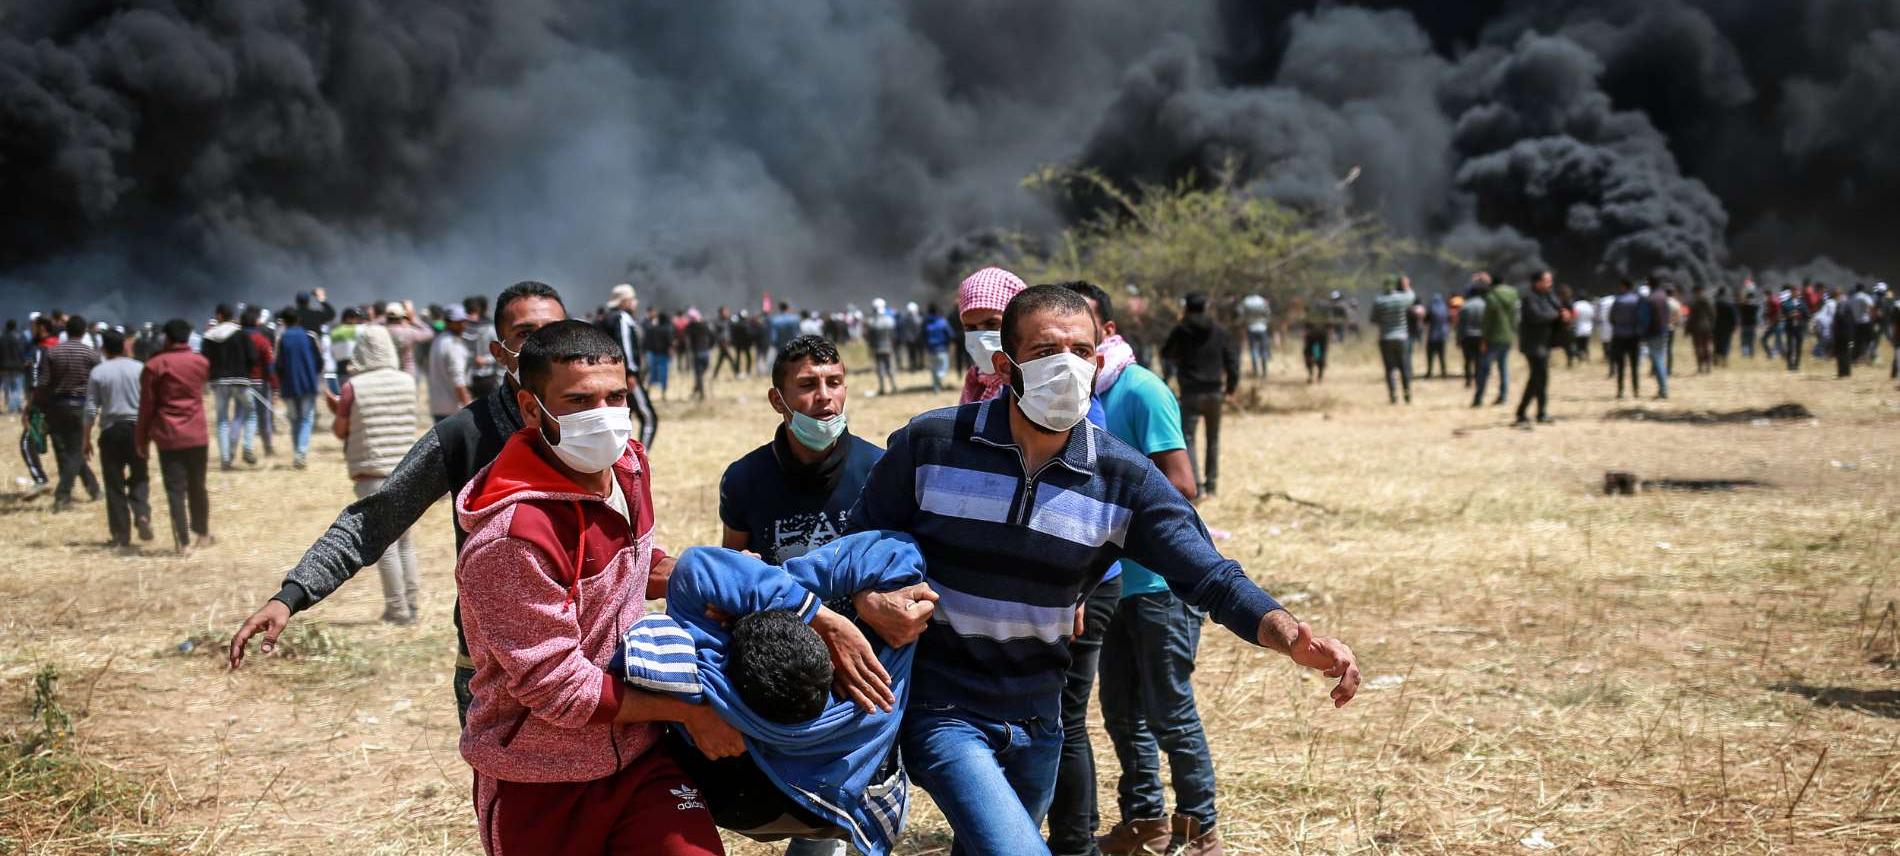 Verletzter bei Protesten in Gaza 